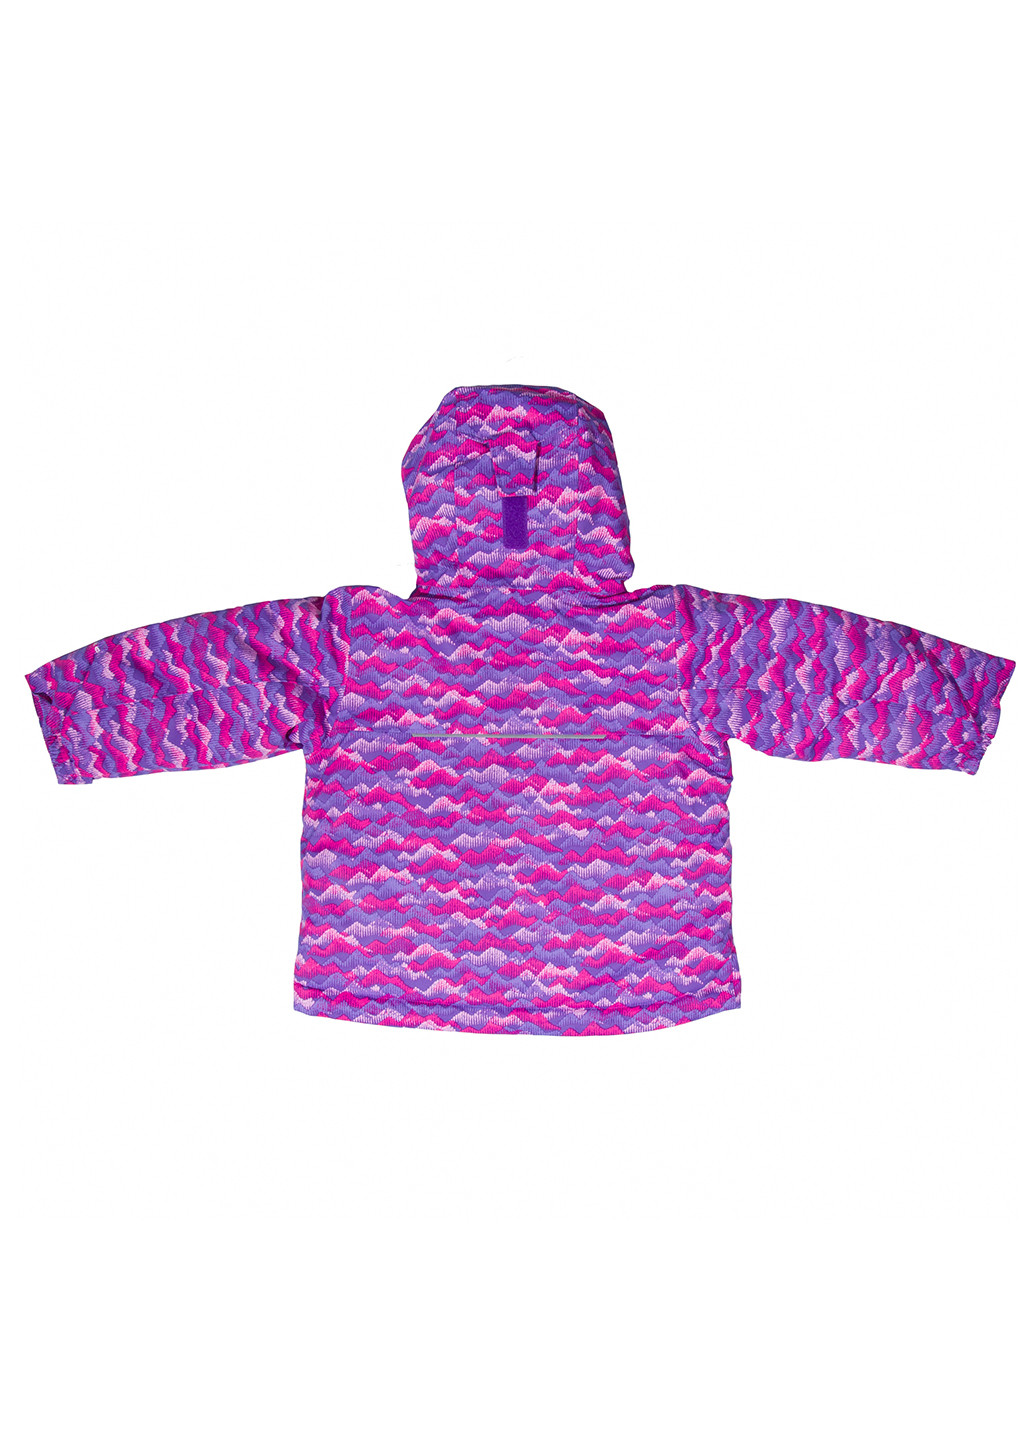 Фіолетовий зимній комплект (куртка, комбінезон) Columbia